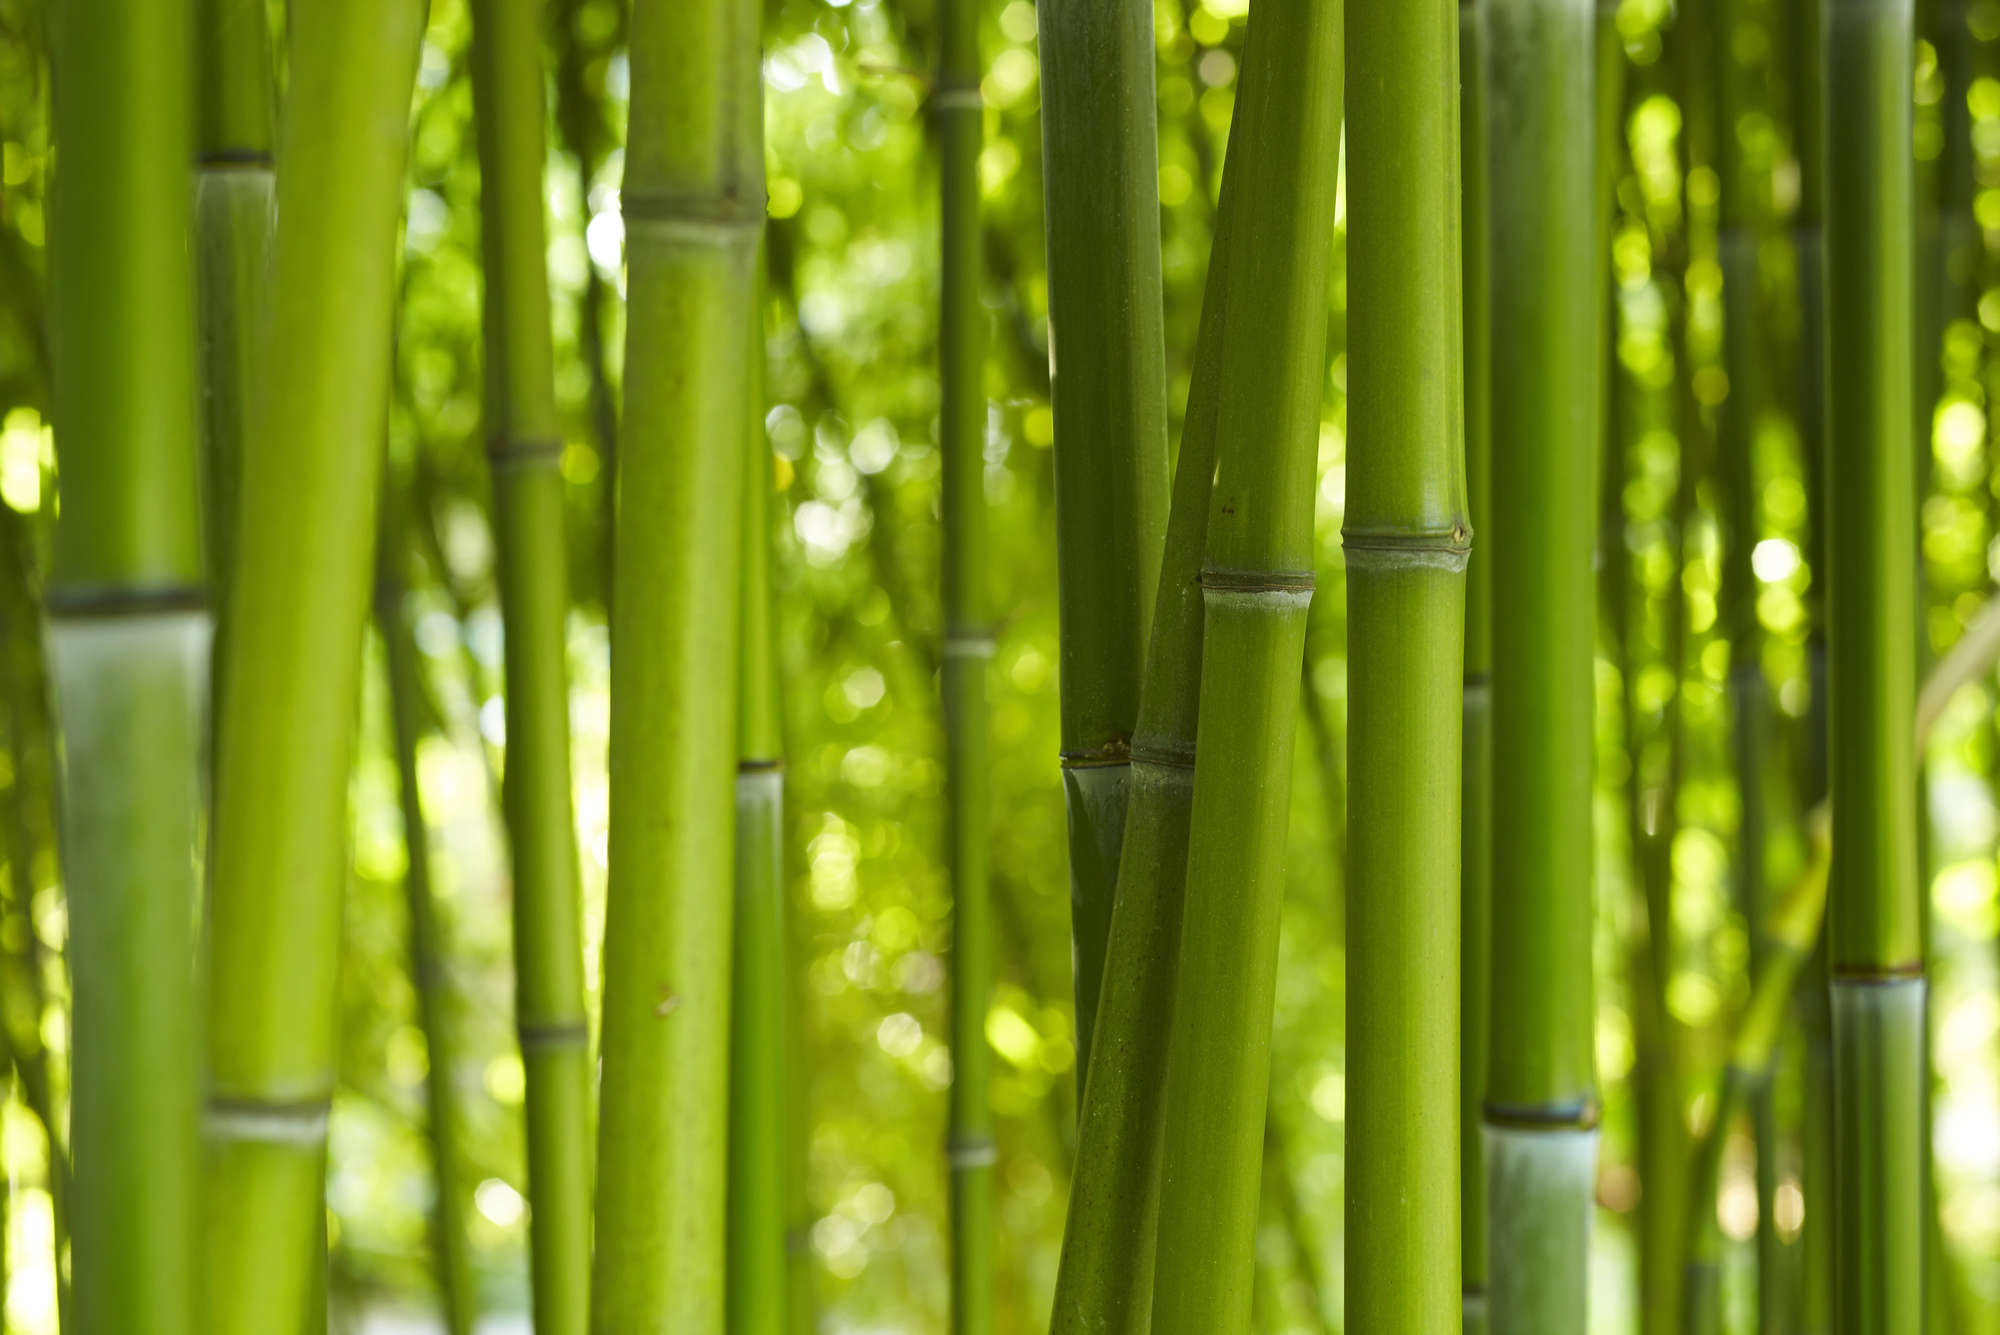             Bamboe in groen behang - structuurvlies
        